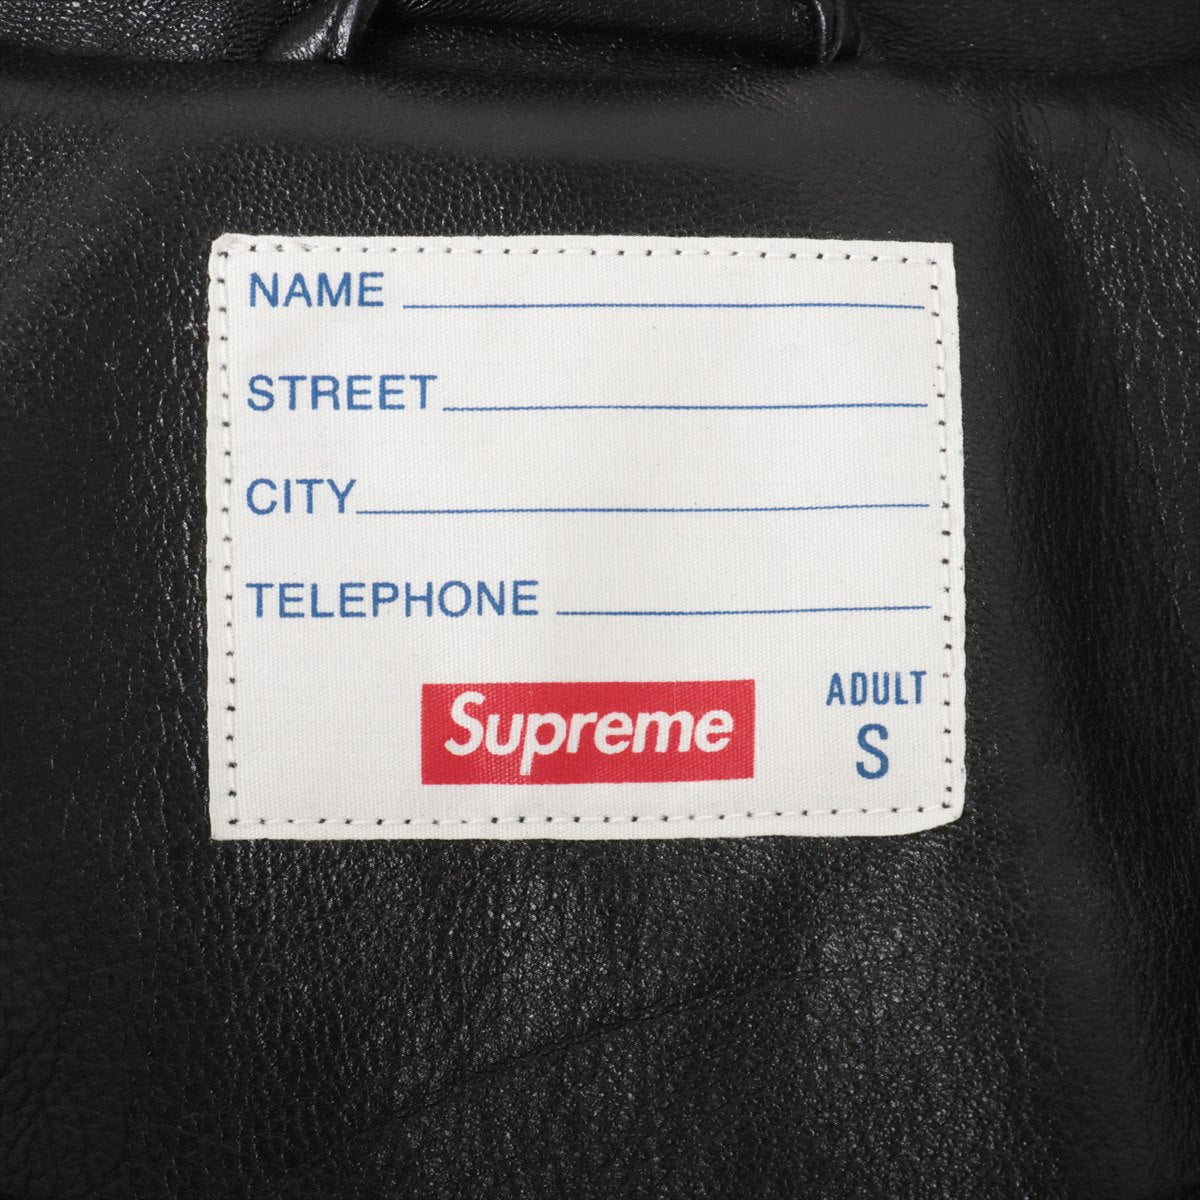 シュプリーム 18SS レザー レザージャケット S メンズ ブラック  Studded Arc Logo Leather Jacket